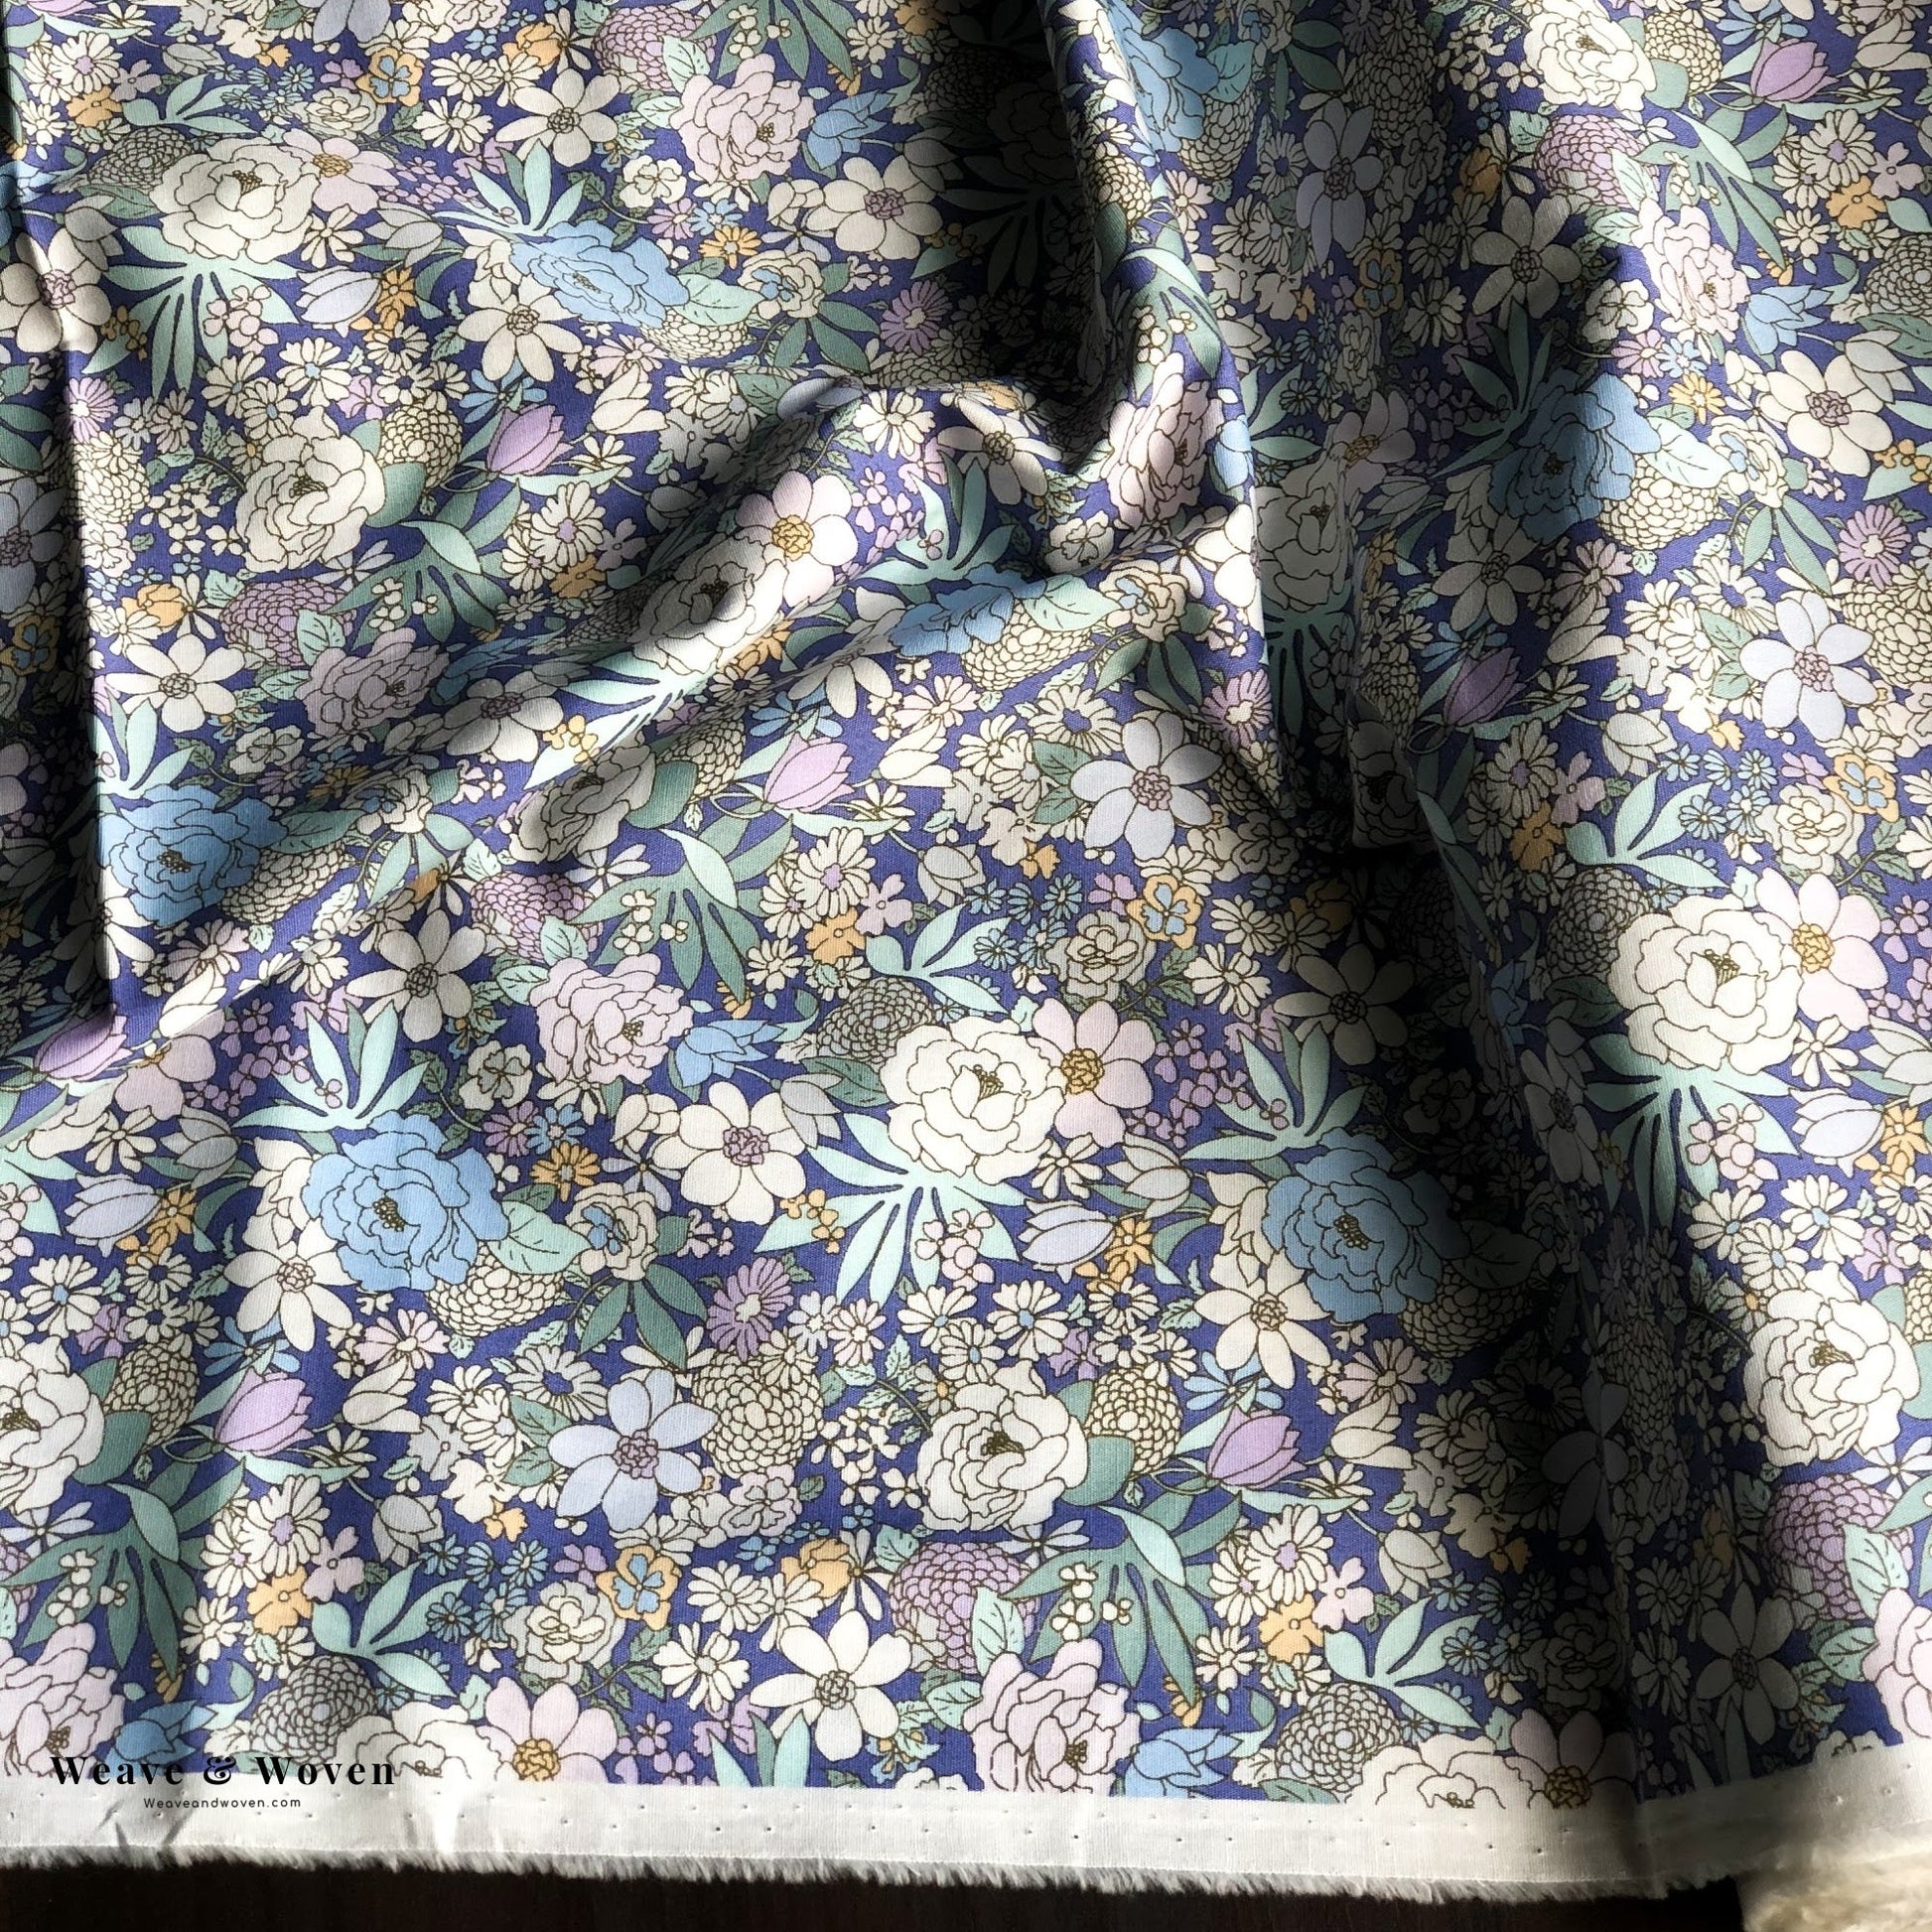 Retro Flowers in Purple | Broadcloth - Weave & Woven